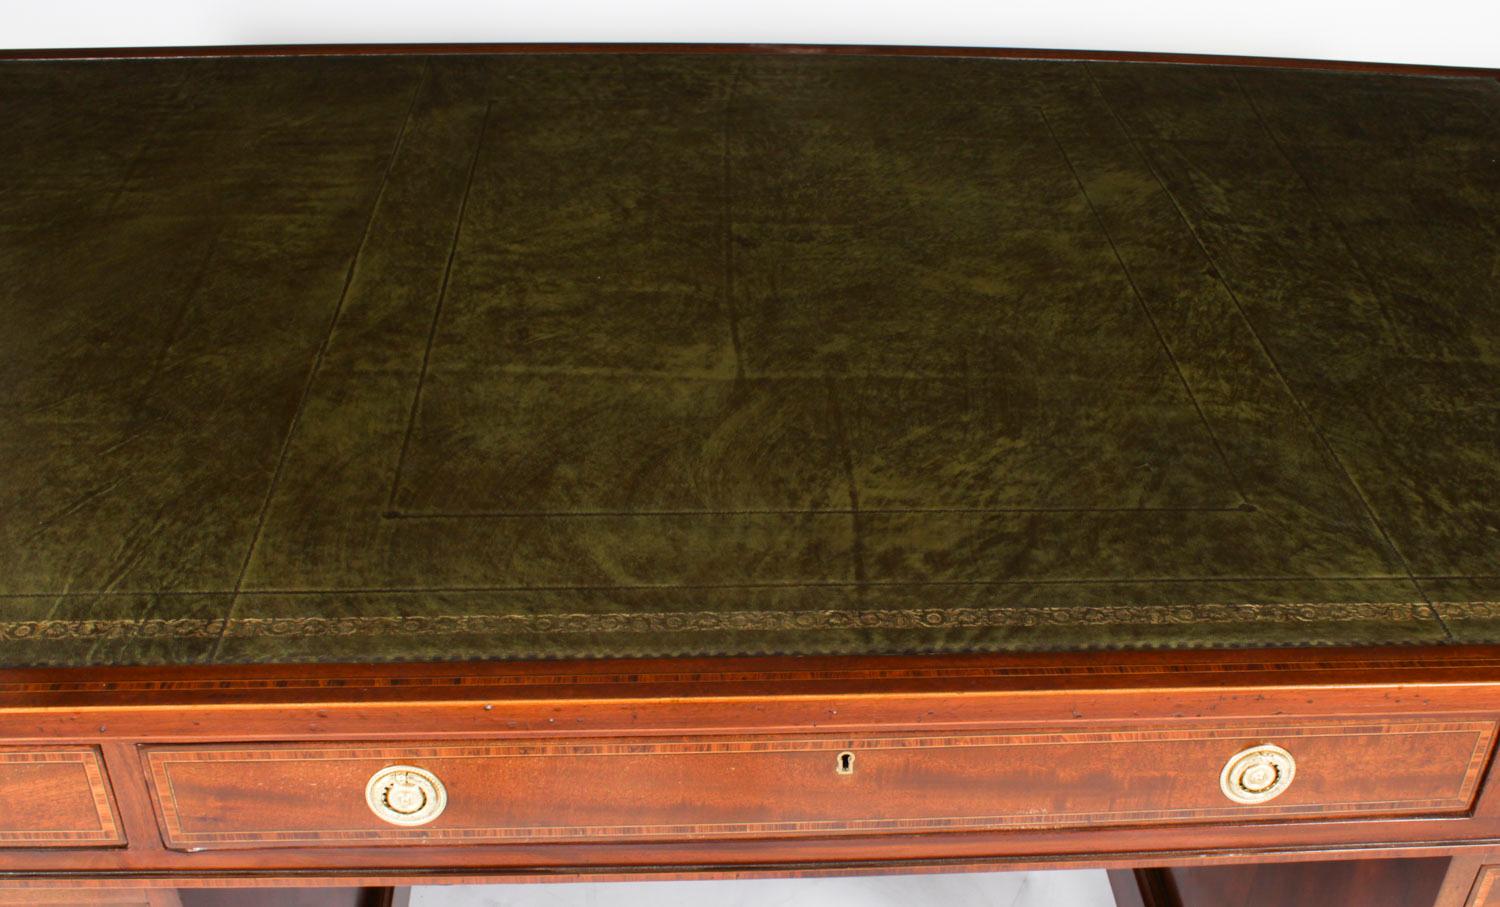 Dies ist eine feine antike George III Flamme Mahagoni Intarsien und crossbanded Sockel Partner Schreibtisch,  um 1810 datiert.
 
Der Schreibtisch ist aus wunderschönem geflammtem Mahagoni mit hochdekorativen Buchsbaum-, Ebenholz-, Satinholz- und